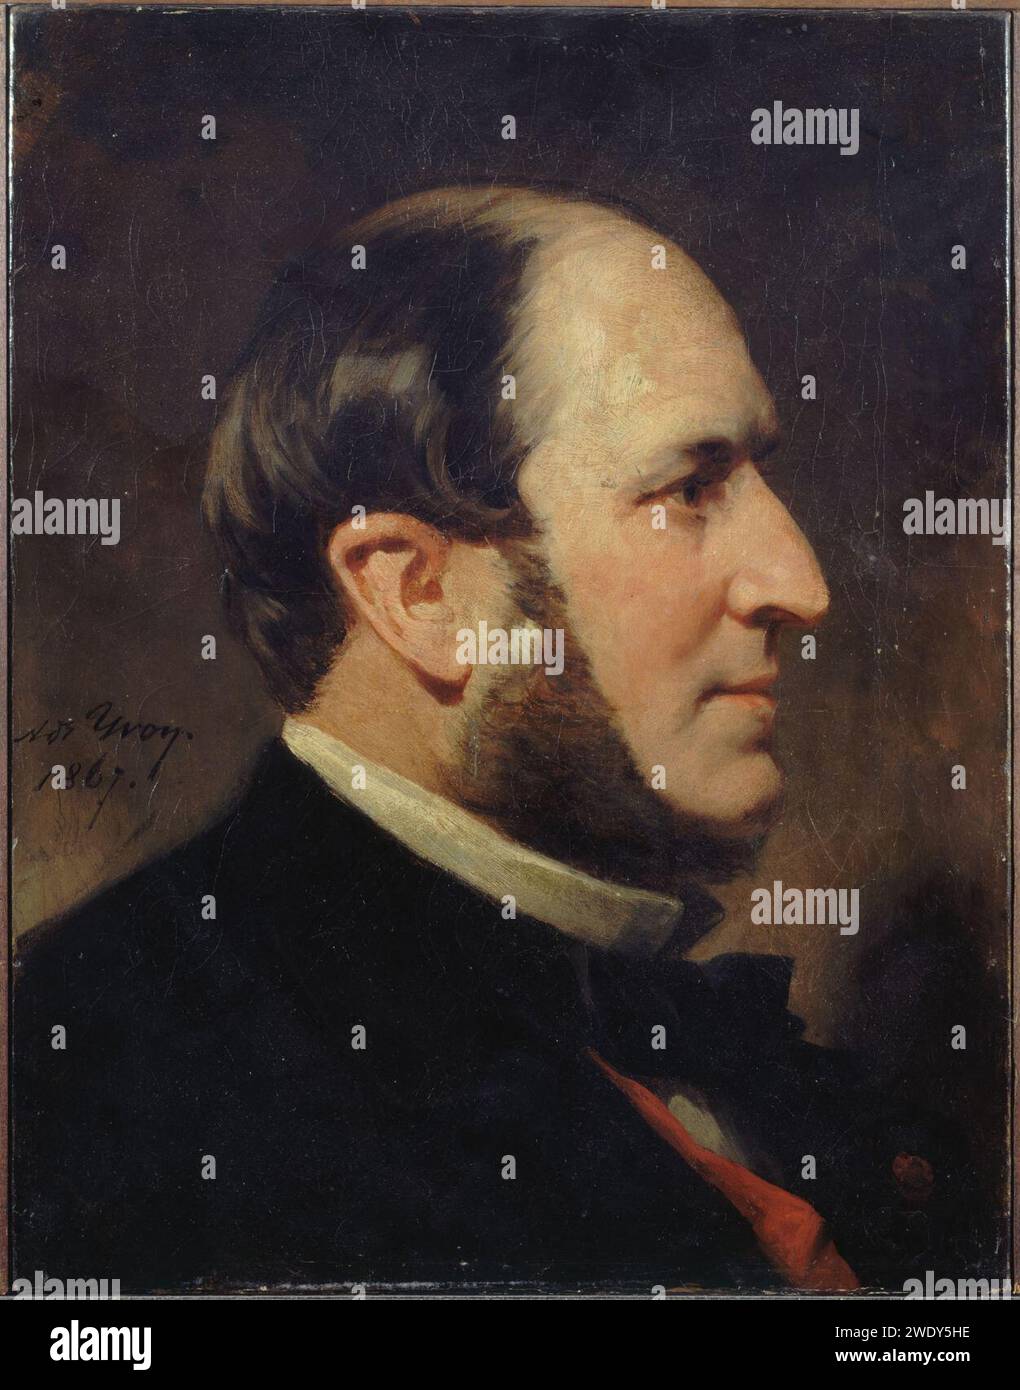 Adolphe Yvon - Portrait du baron Haussmann (1809-1891), préfet de la Seine - P346 Stock Photo